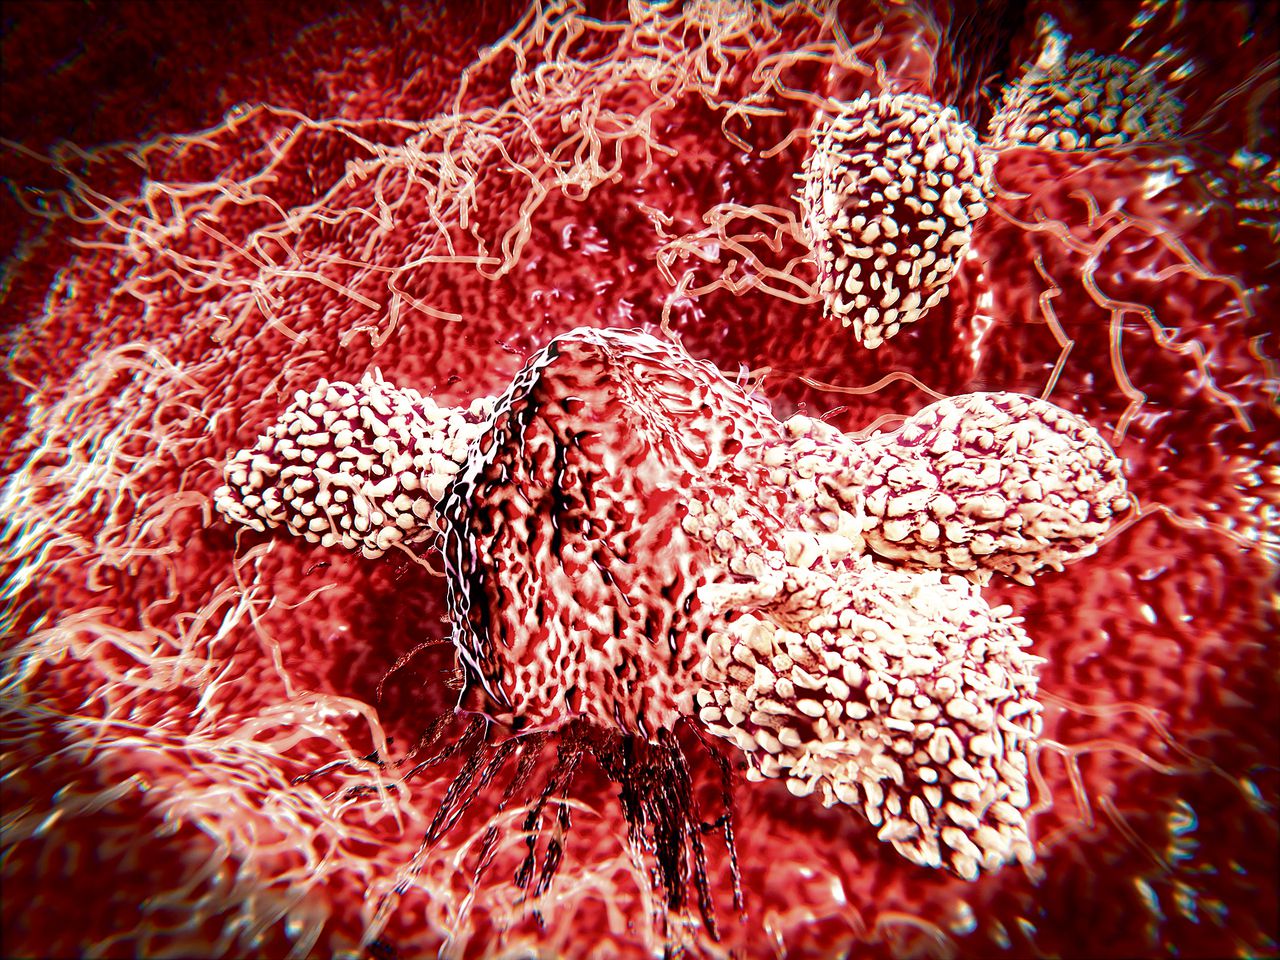 Witte bloedcellen in de aanval. Het afweersysteem kan ‘getraind’ worden om gericht tumorcellen in het lichaam op te ruimen.